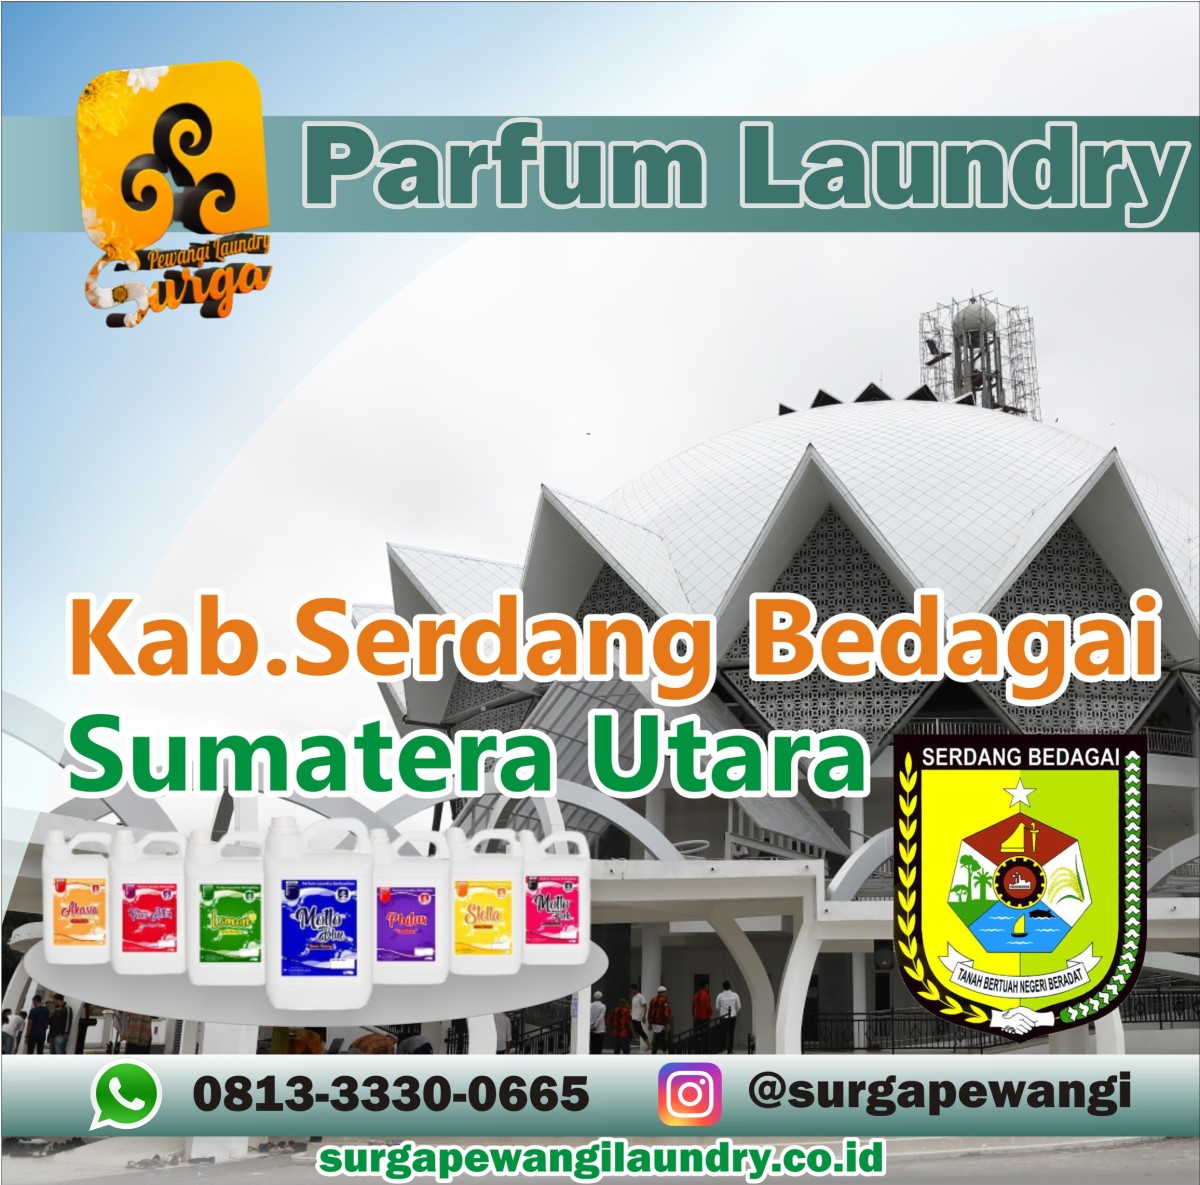 Parfum Laundry Serdang Bedagai, Sumatera Utara